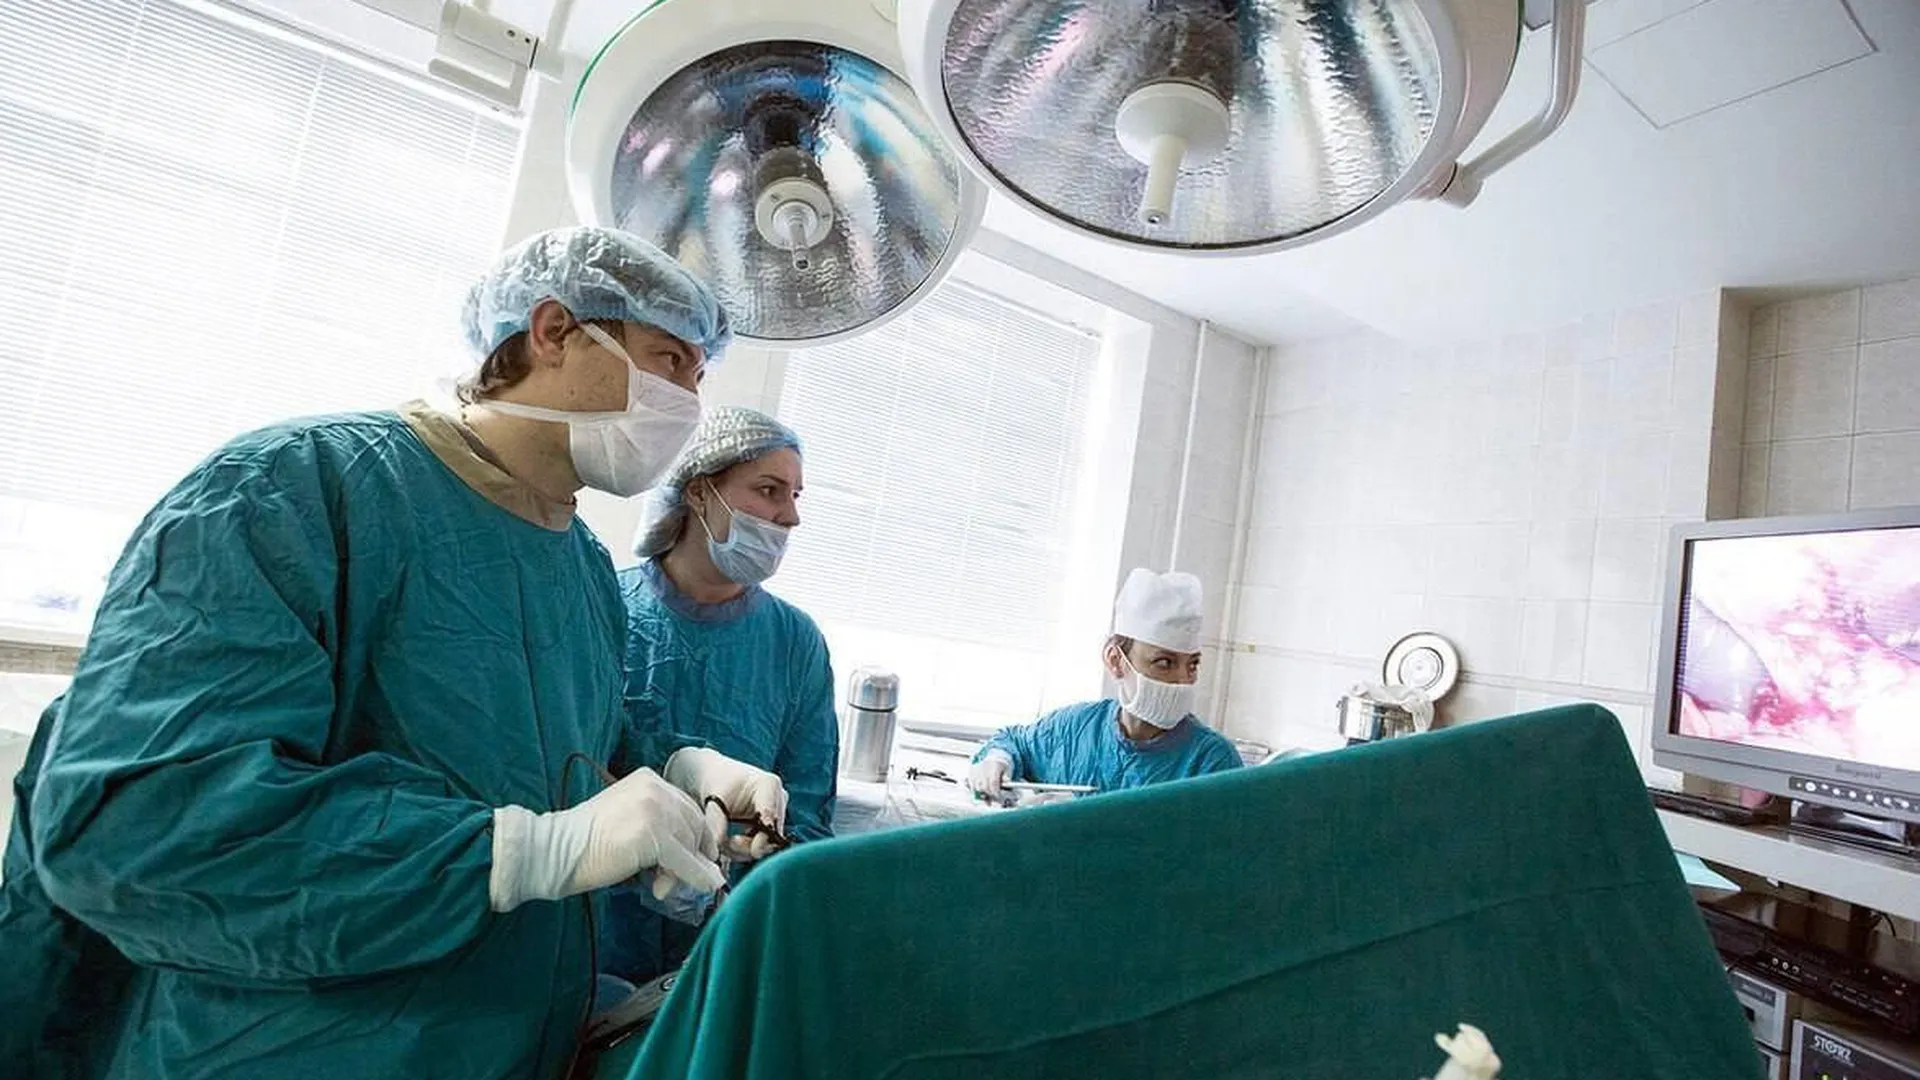 Пациентку с грыжей пищевода размером 20 сантиметров успешно прооперировали в Реутове